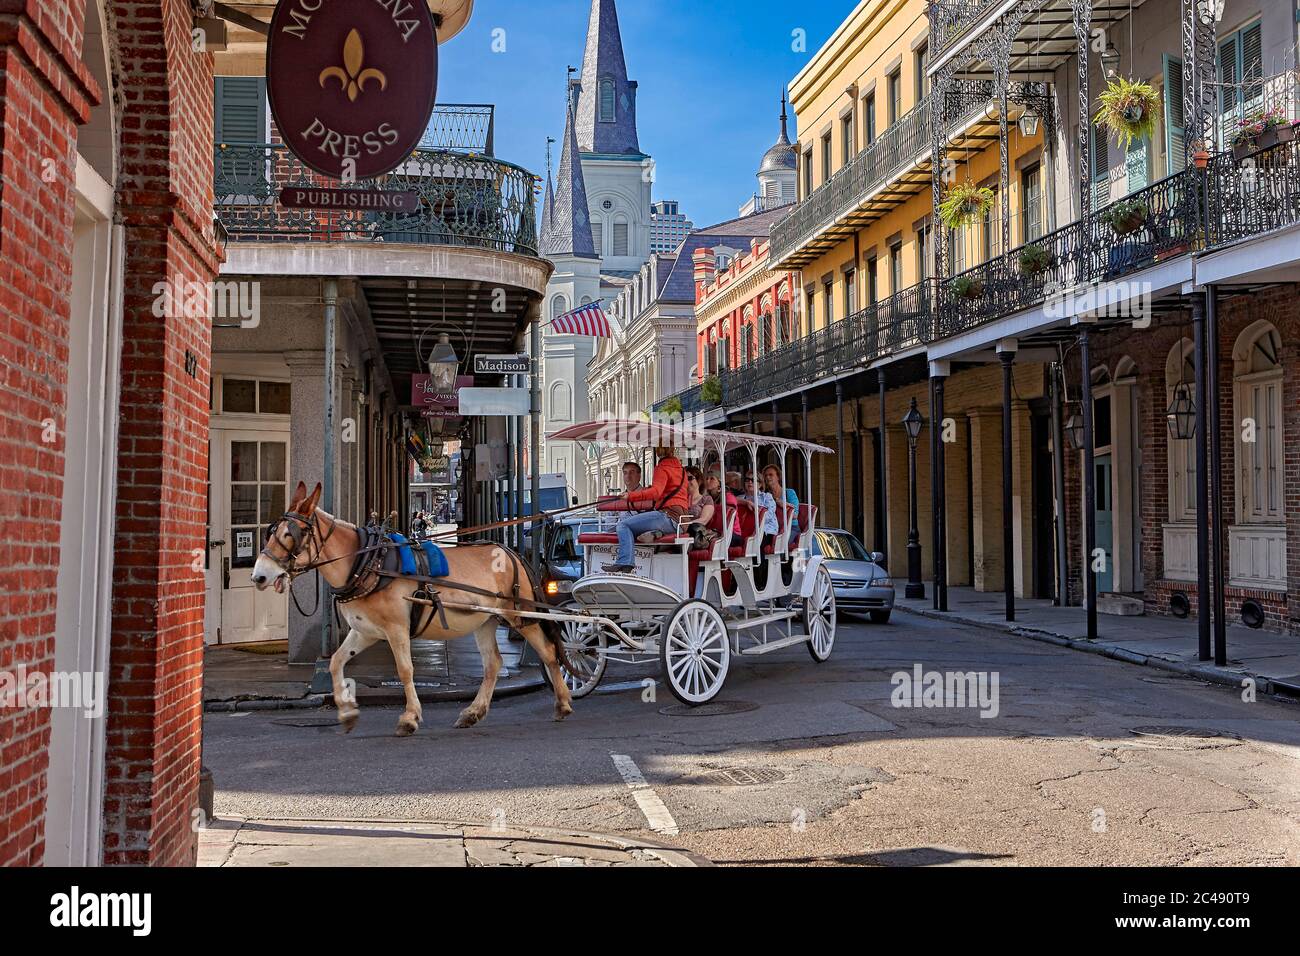 Turistas que viajan en un carro tirado por caballos. French Quarter, Nueva Orleans, Luisiana, Estados Unidos. Foto de stock